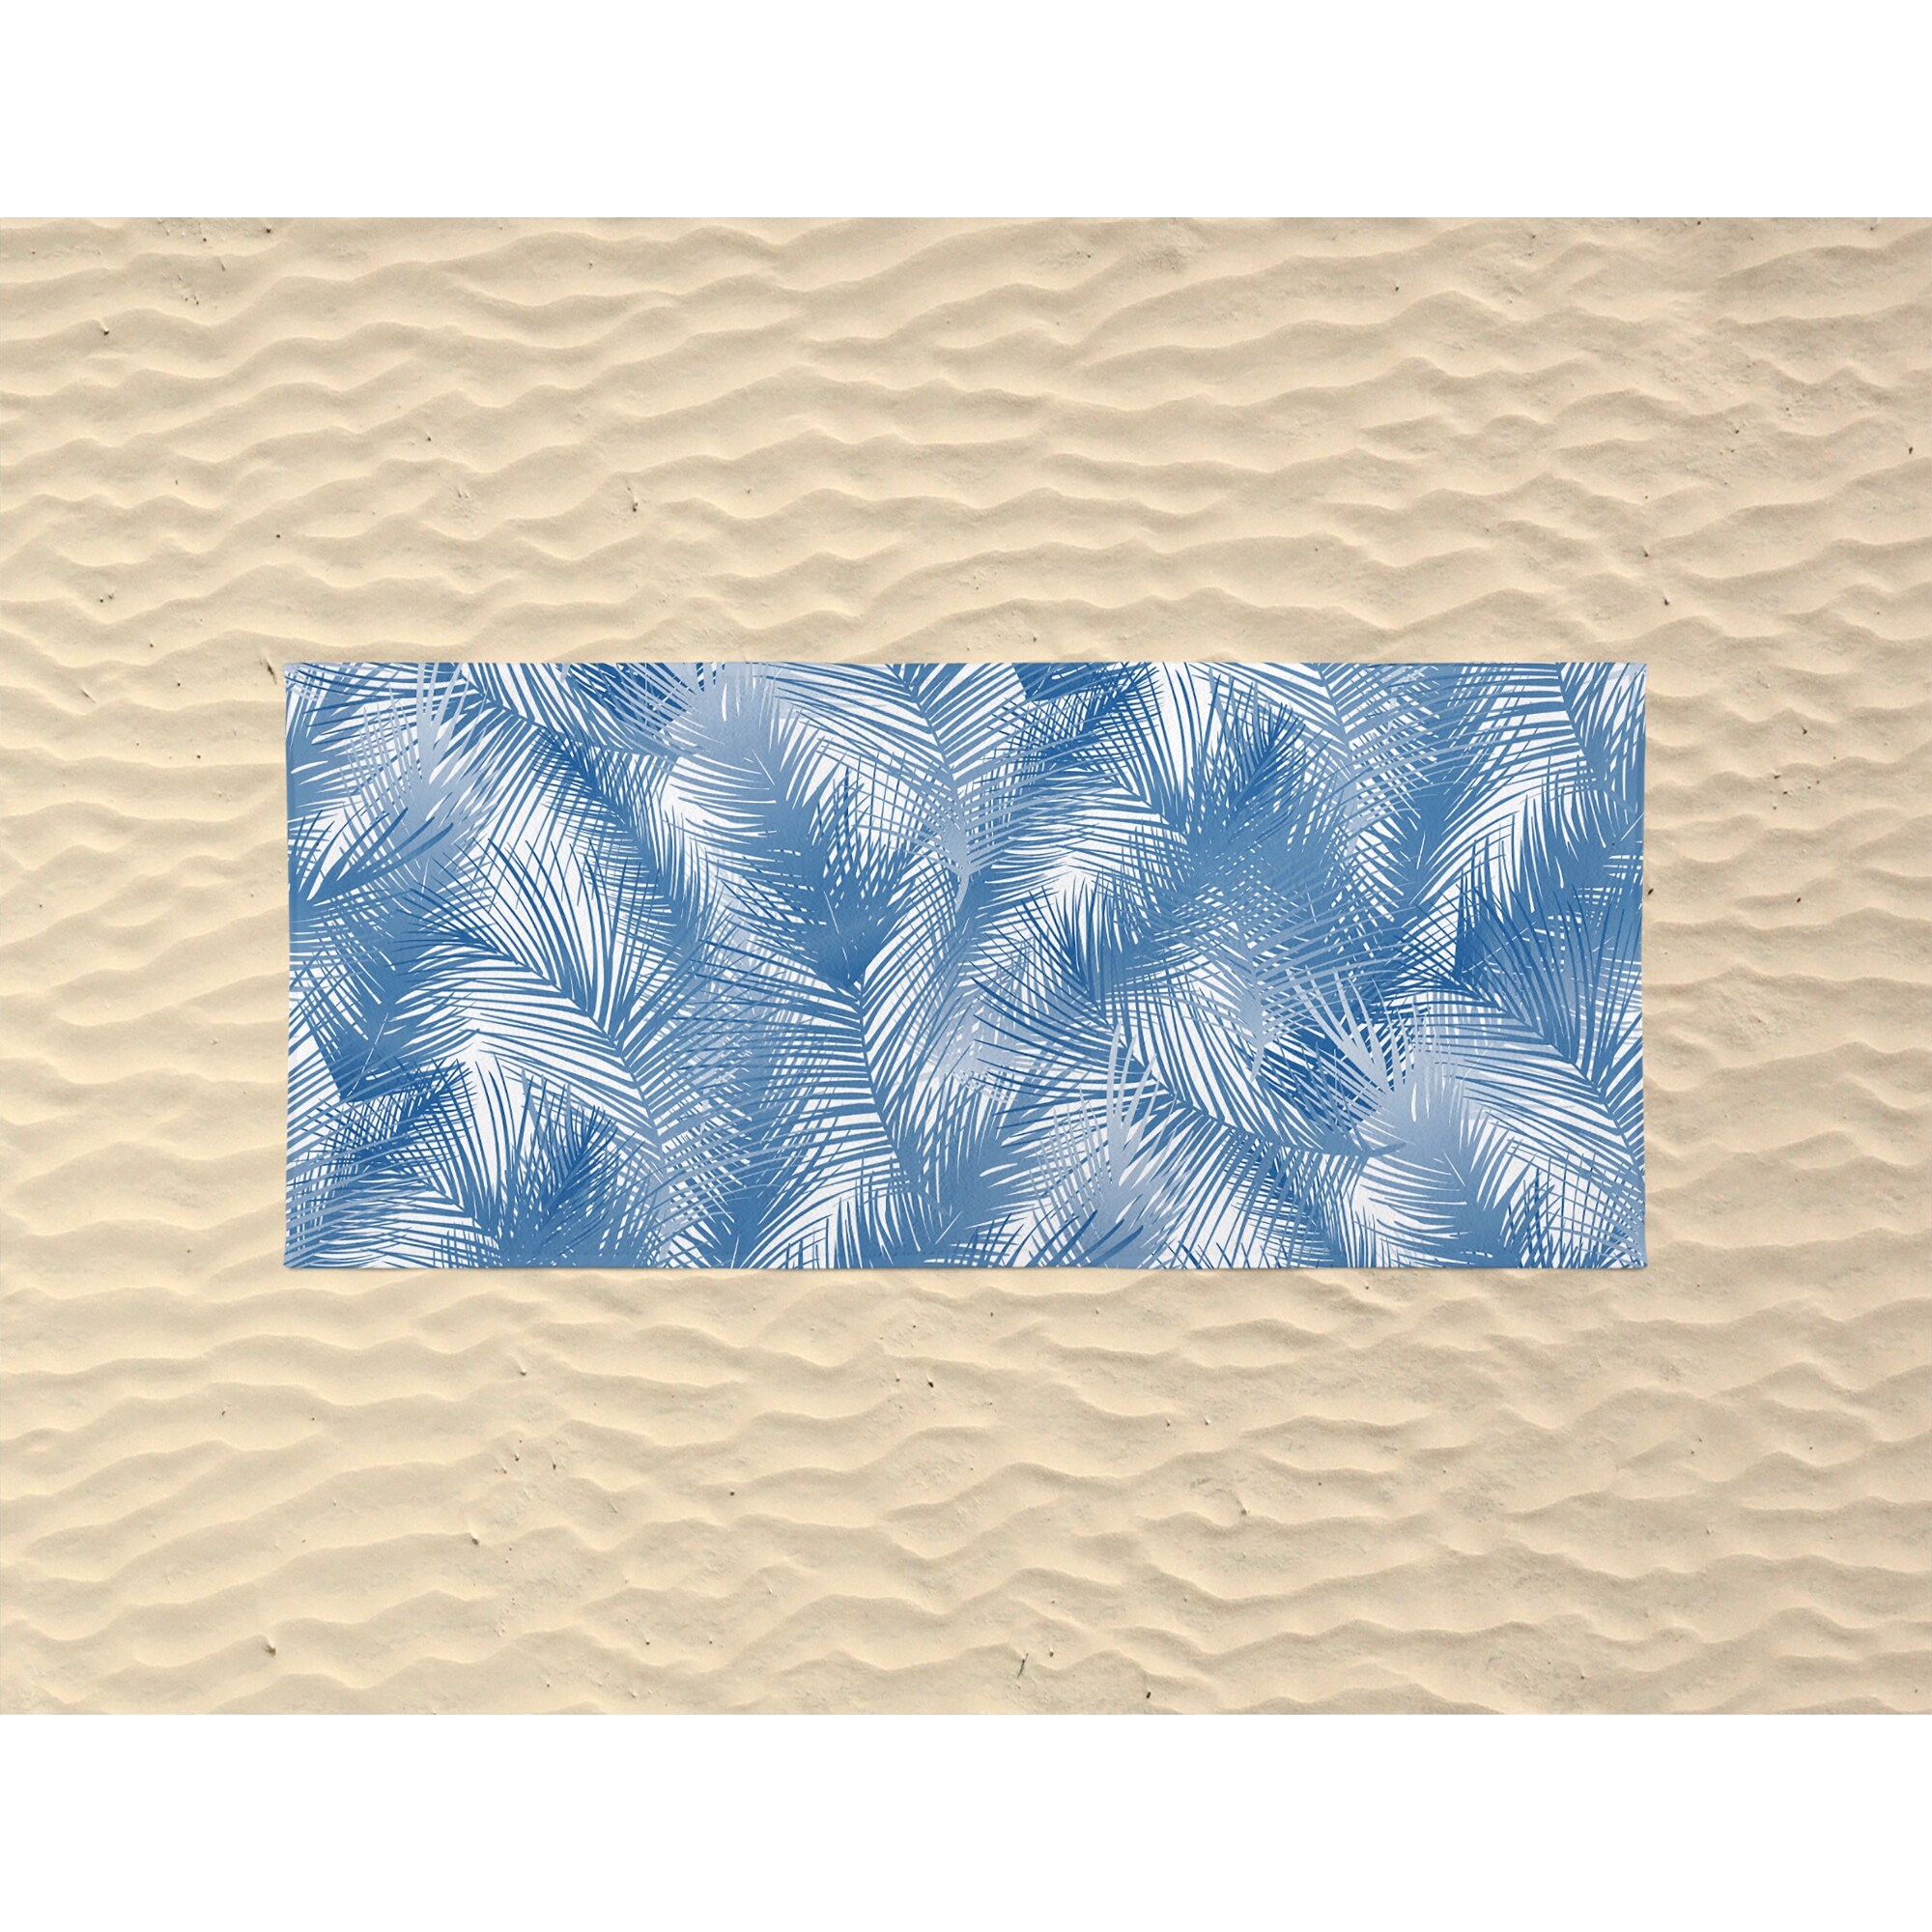 PALM CHEER BLUE Beach Towel By Terri Ellis - 36" x 72"